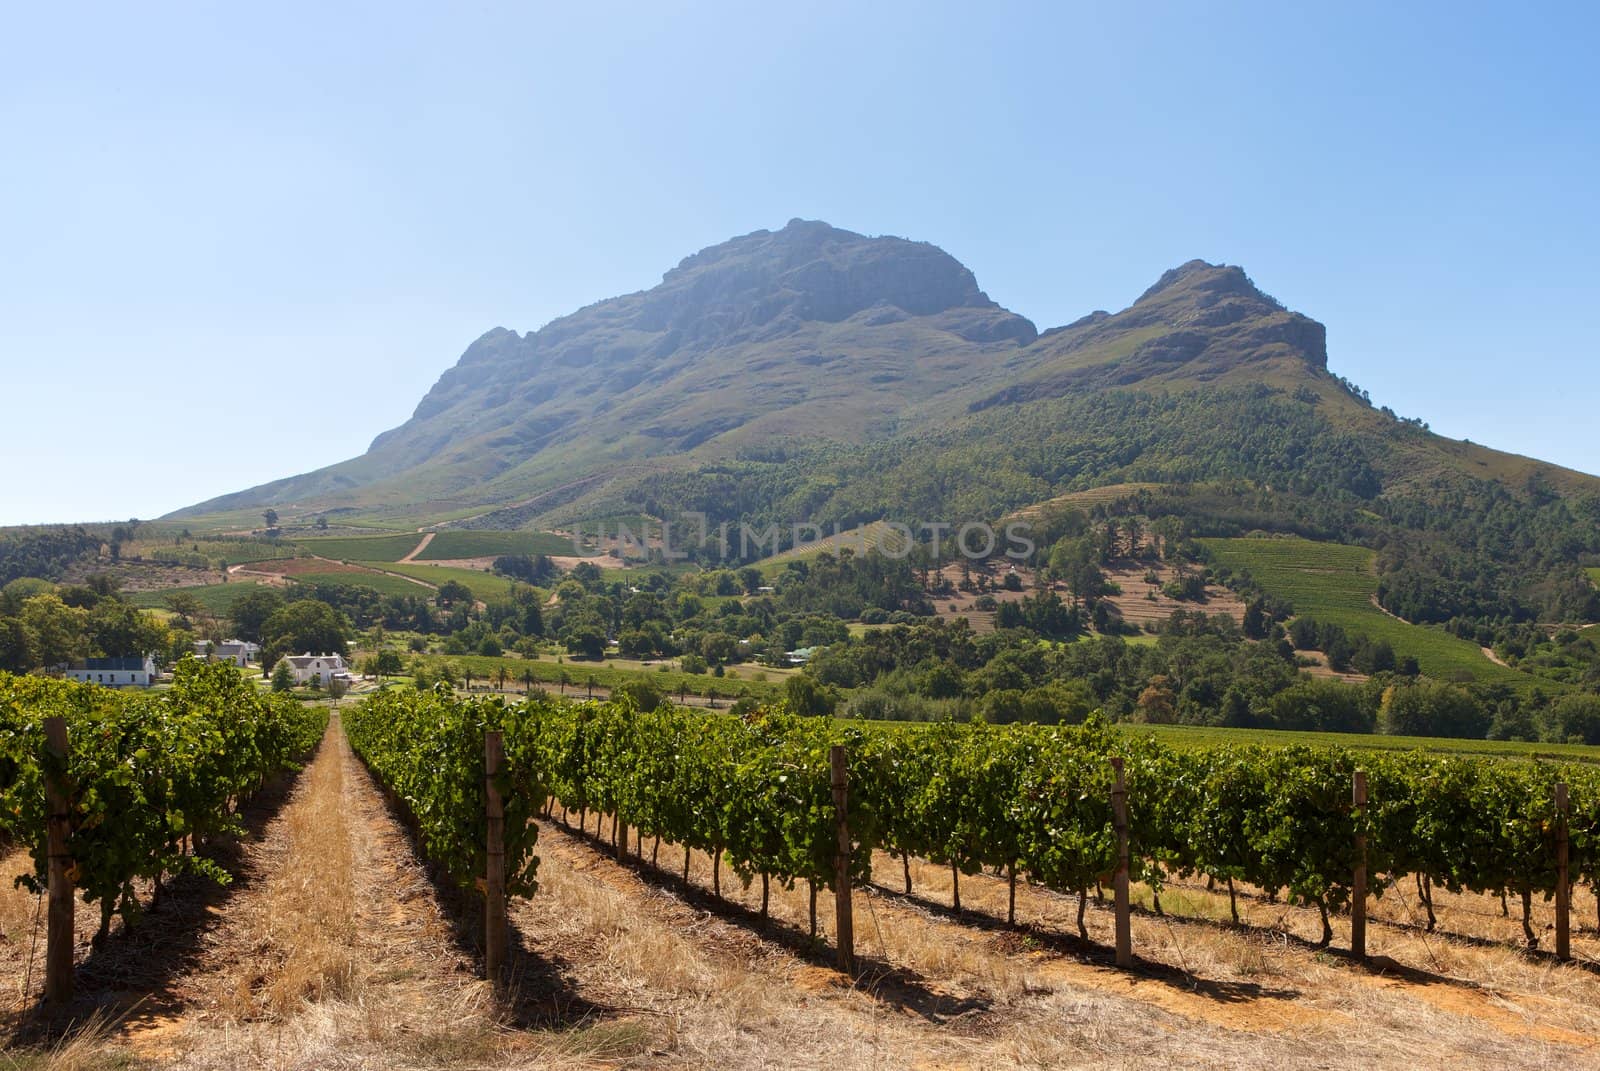 South Africa, vineyards near Stellenbosch